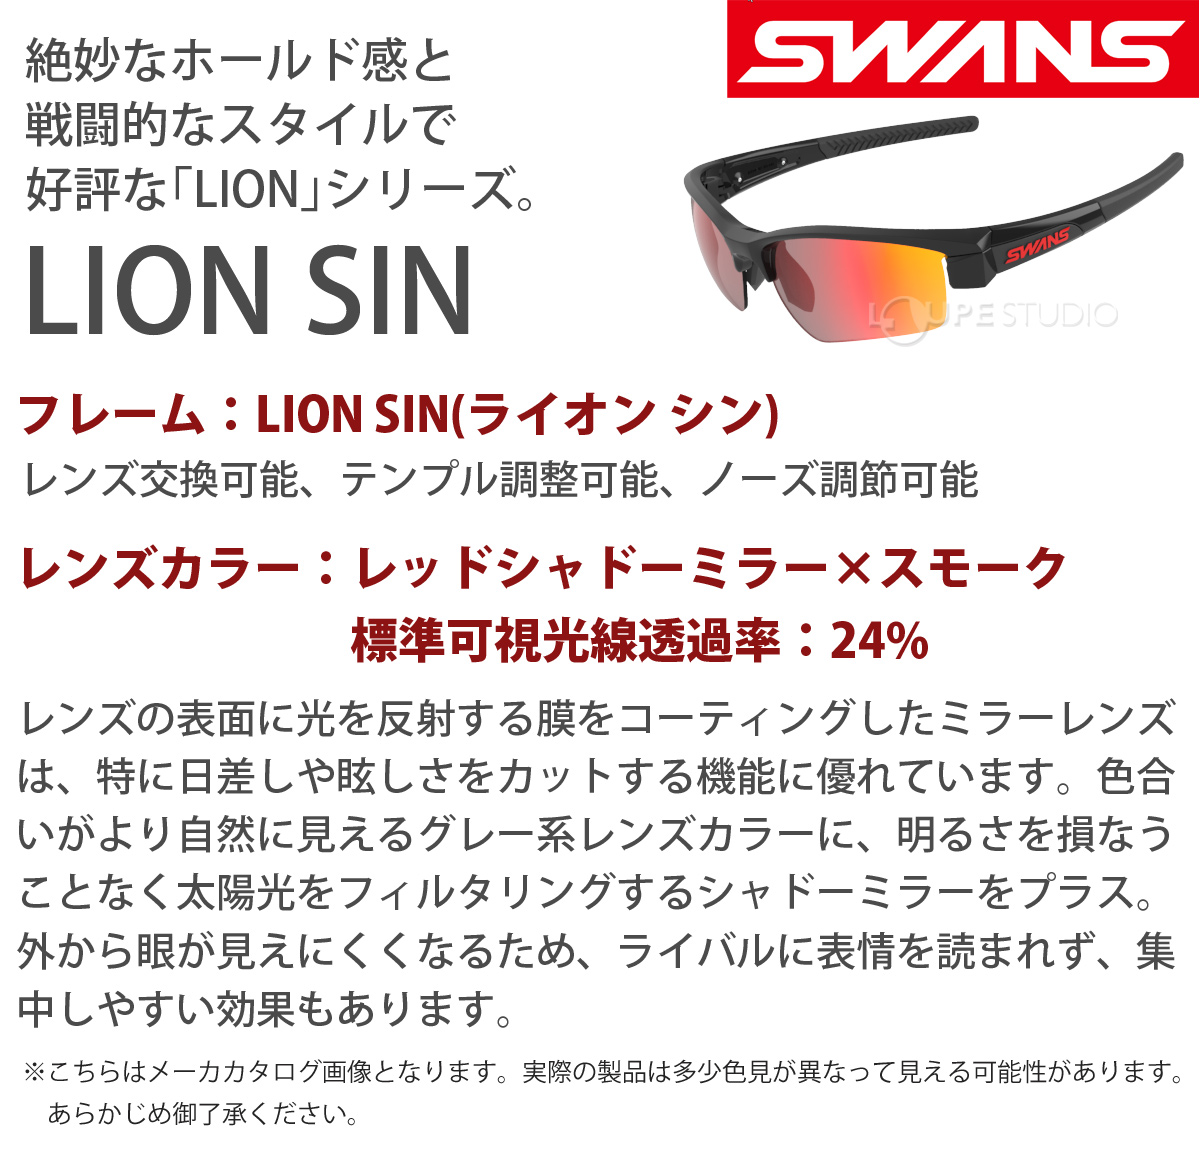 7398円 数々の賞を受賞 スワンズ SWANS サングラス LION SIN ミラーレンズ LI SIN-1701